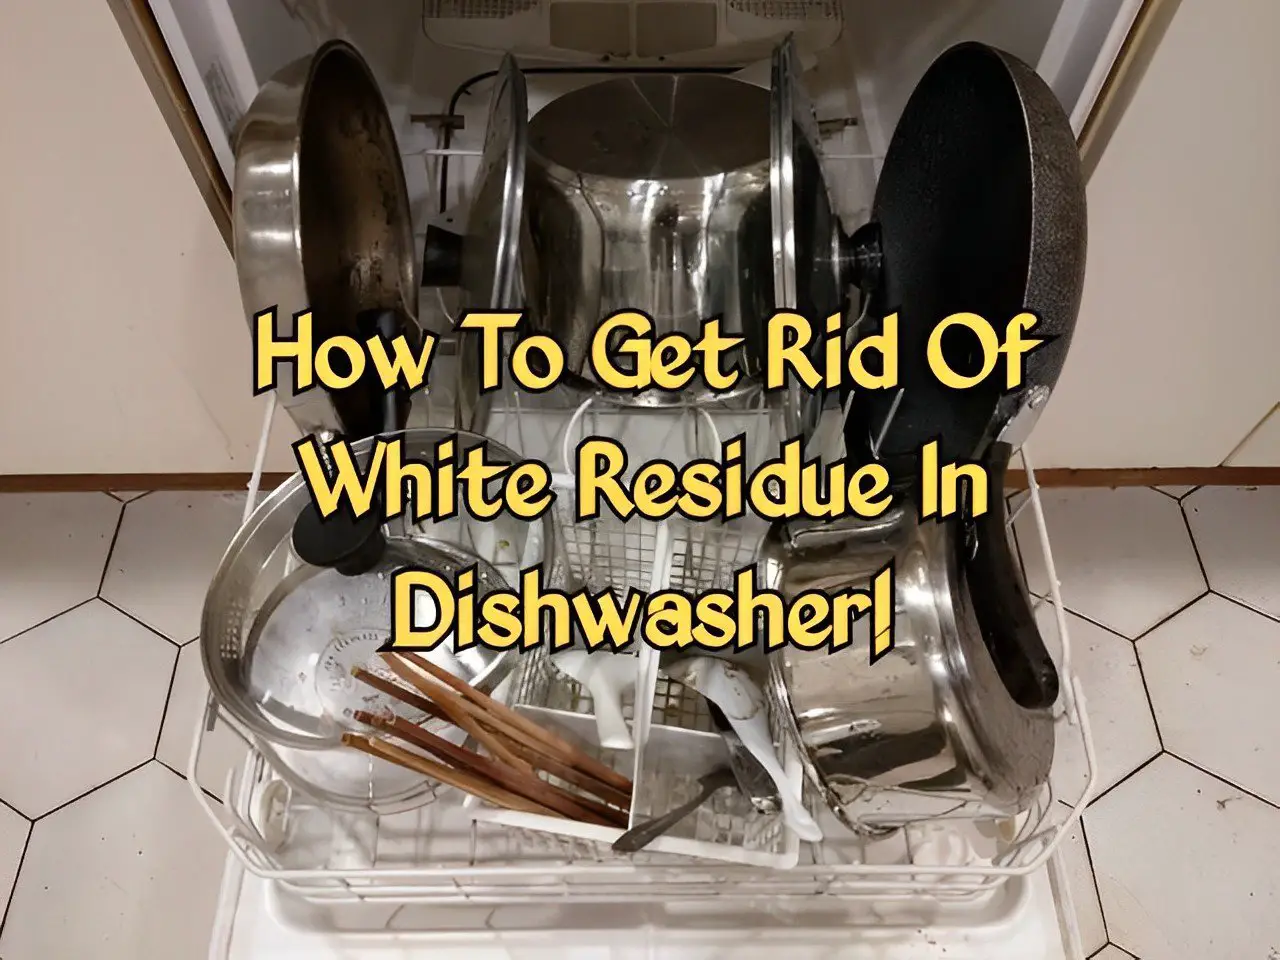 Dishwasher leaving white residue